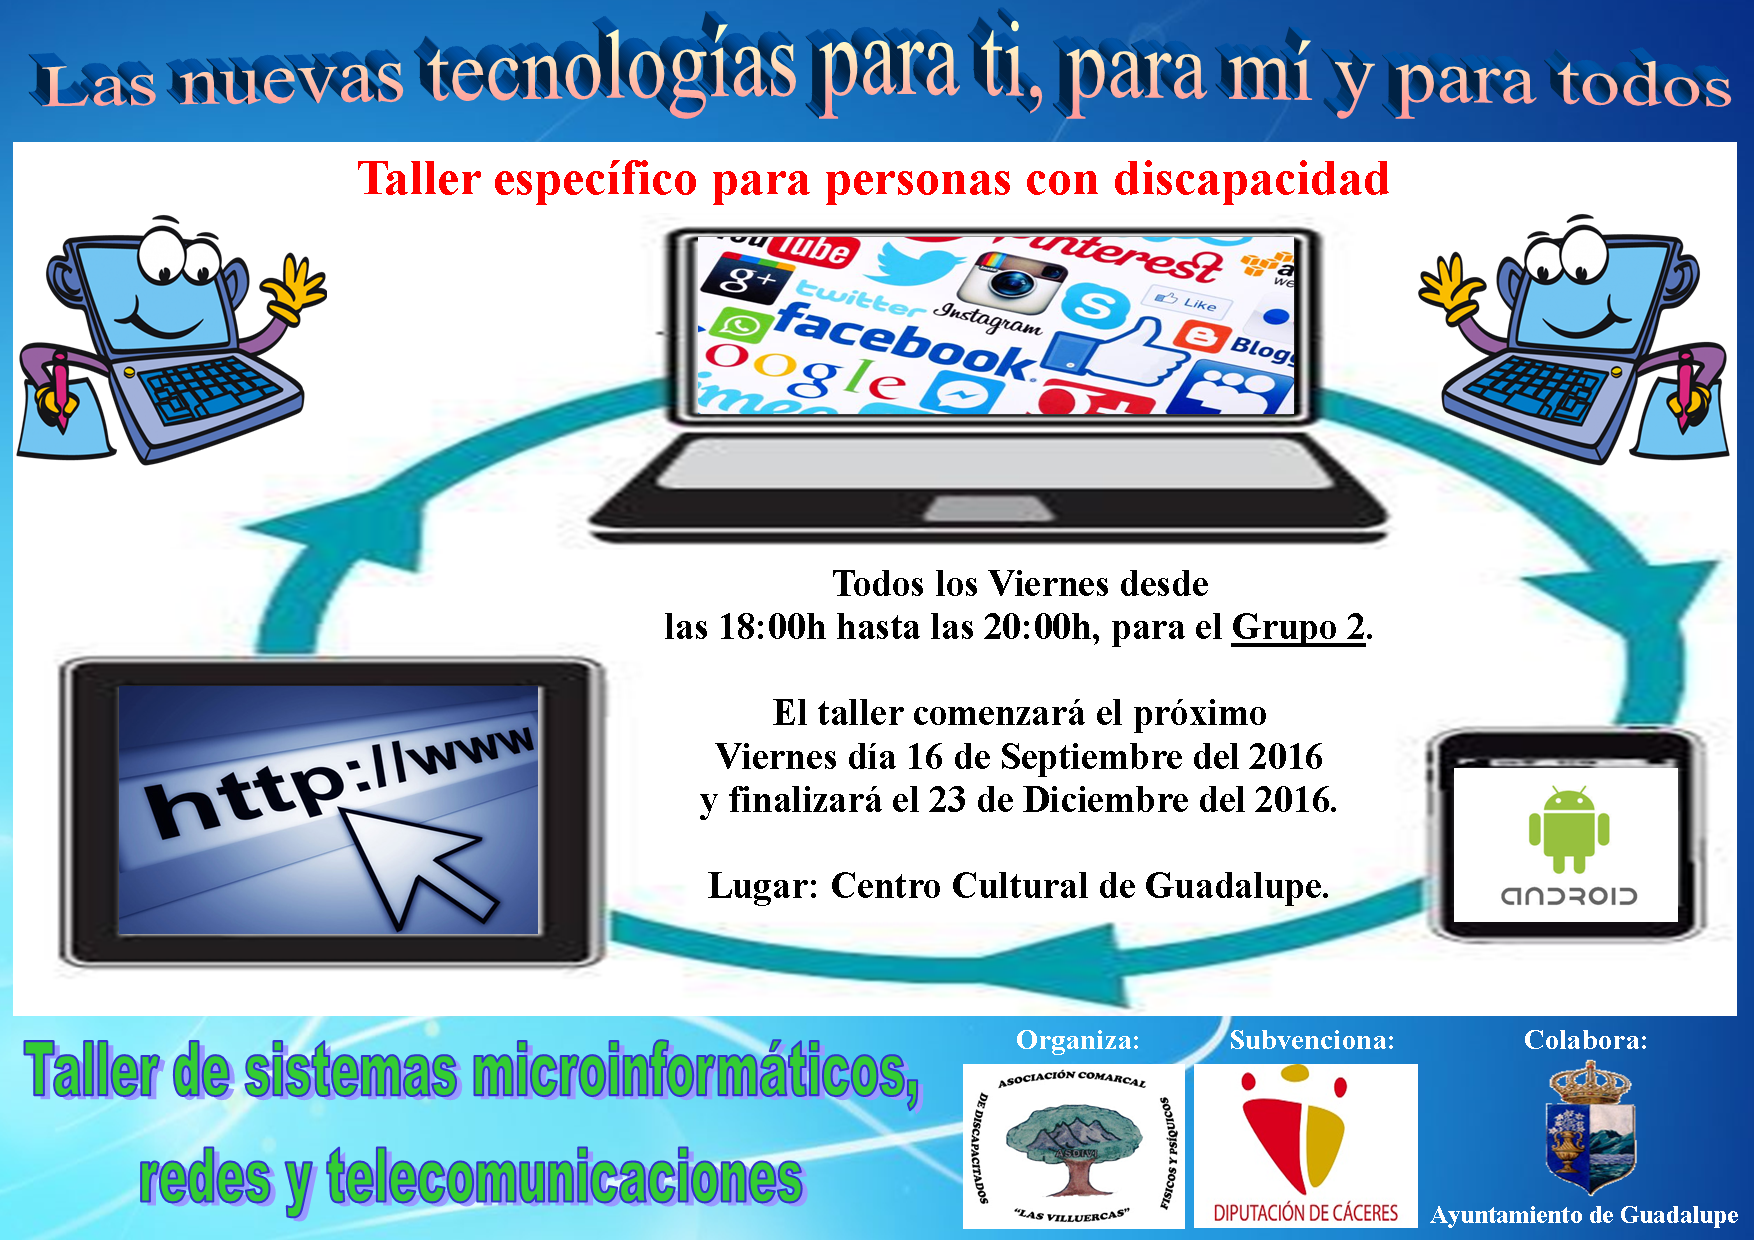 Taller de Sistemas microinformáticos, redes y telecomunicaciones 2016 - Guadalupe 2